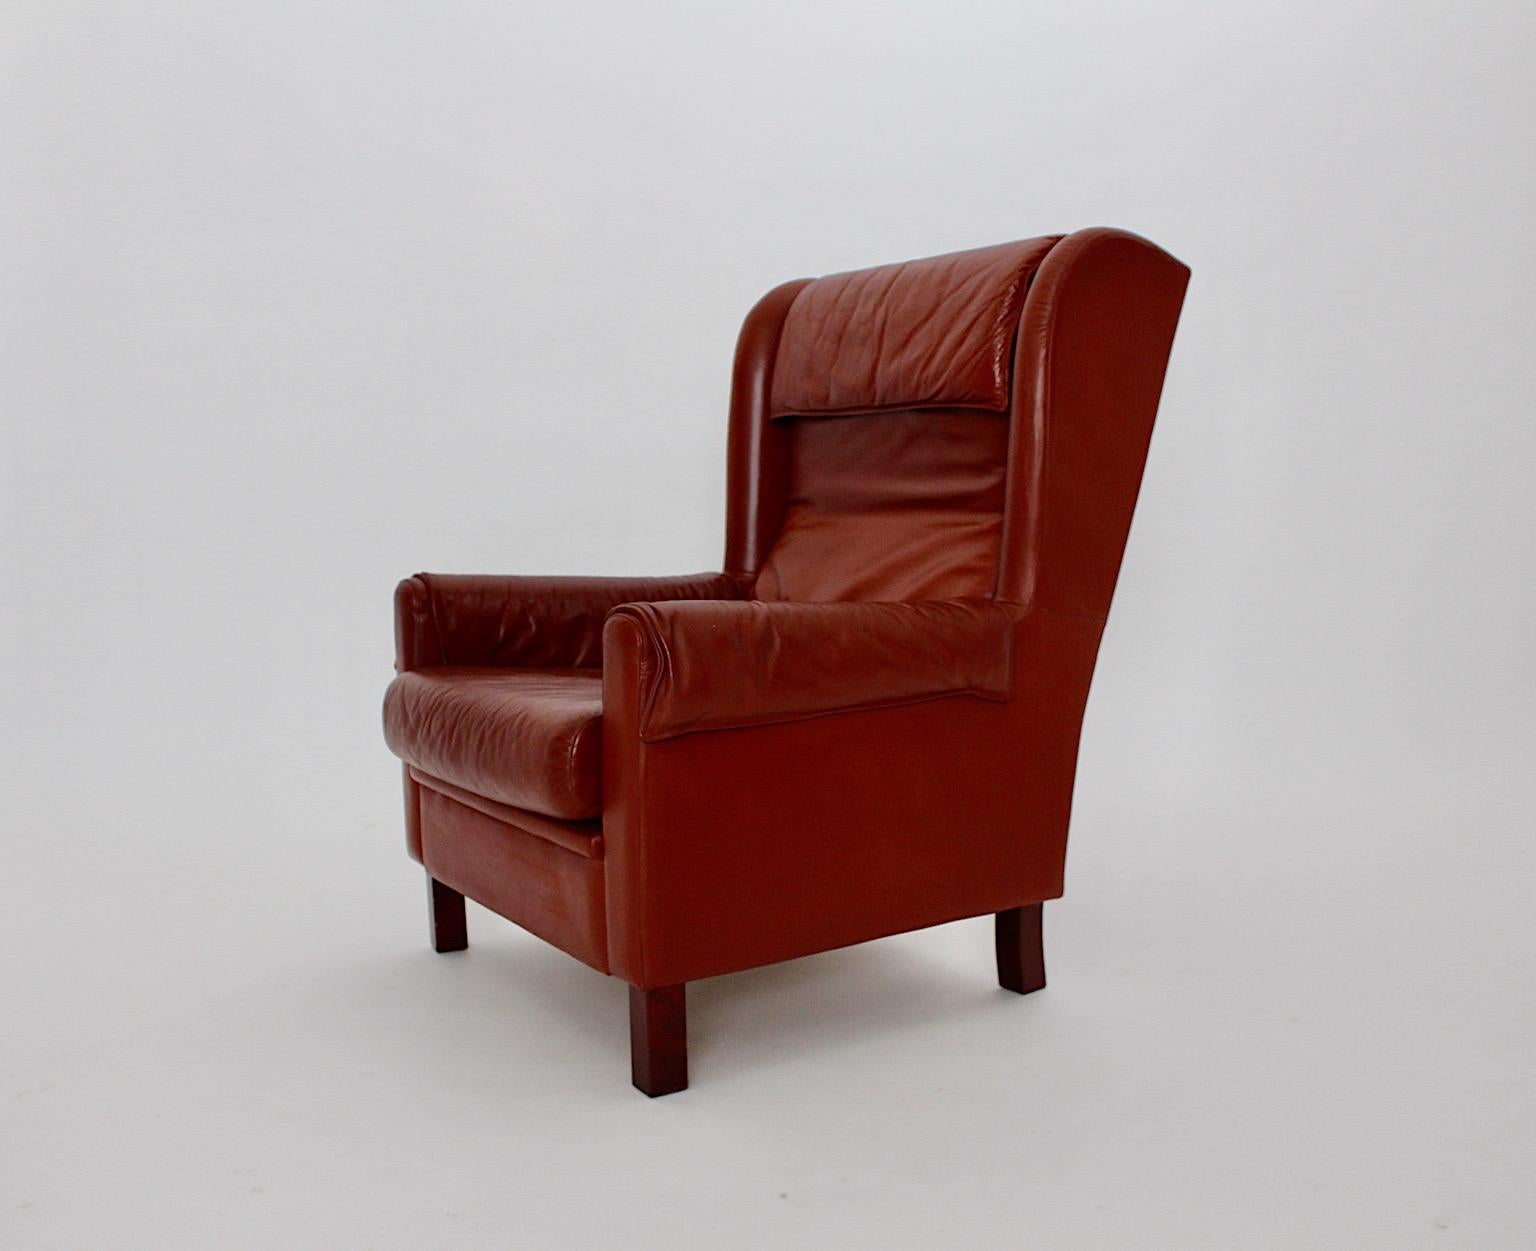 Chaise à oreilles en cuir vintage ou chaise longue en cuir brun rougeâtre des années 1970 en Autriche.
Alors que le fauteuil vintage en cuir wingback présente deux coussins détachés, ses pieds sont fabriqués en hêtre et en placage de noyer.
Le